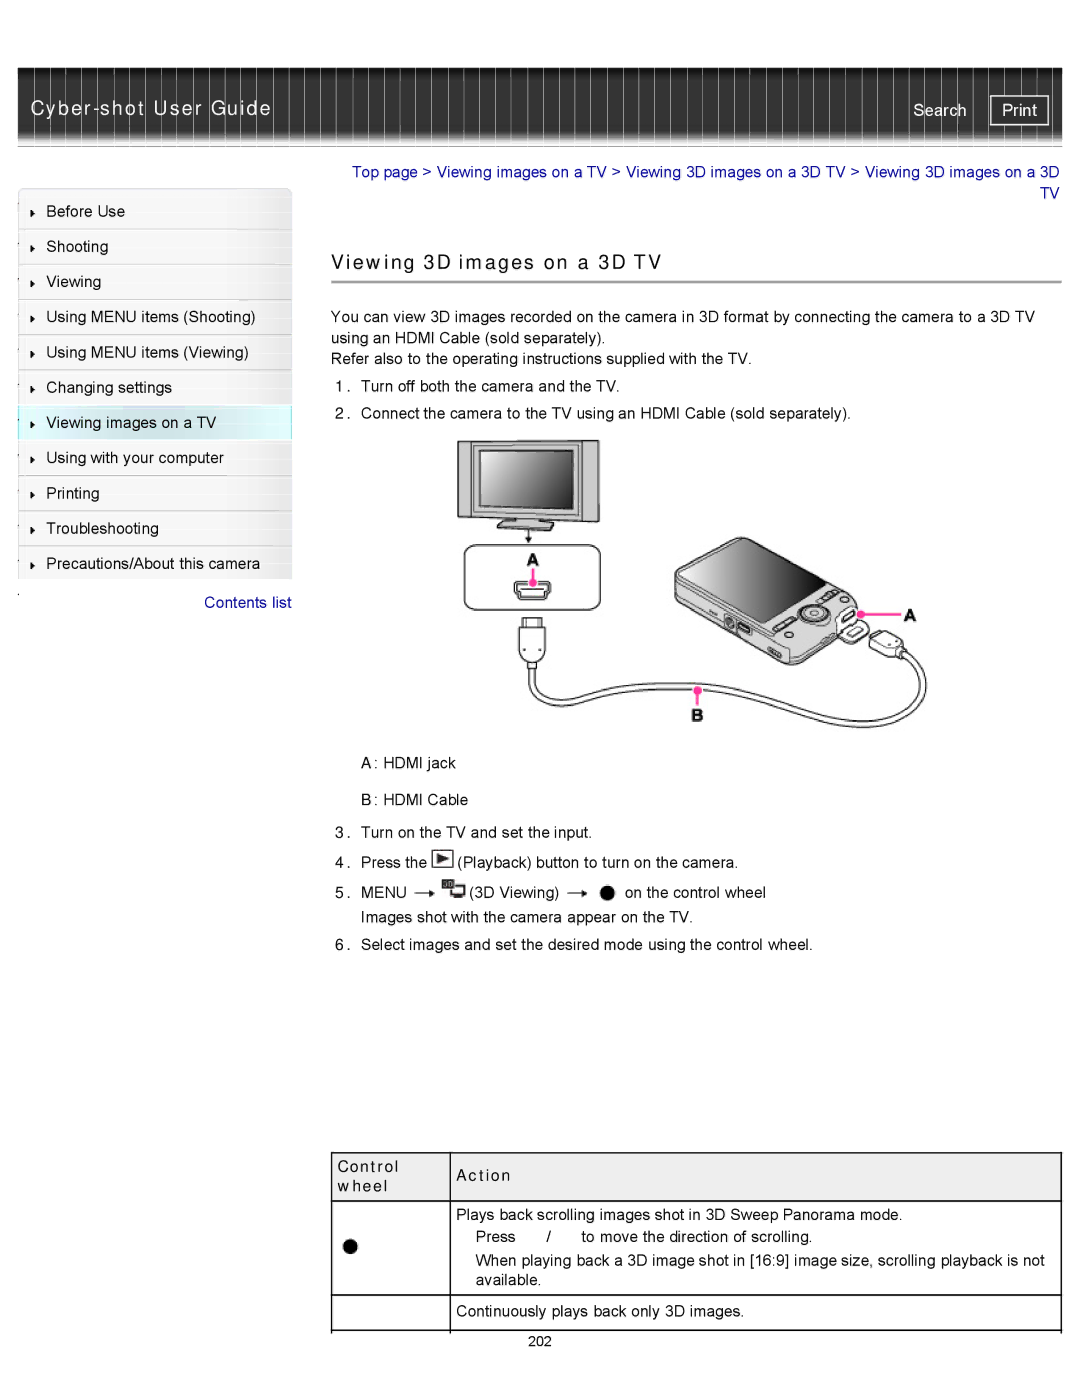 Sony DSC-WX100/WX150, DSC-WX150/R, DSCWX150/L manual Viewing 3D images on a 3D TV, Control Action Wheel 